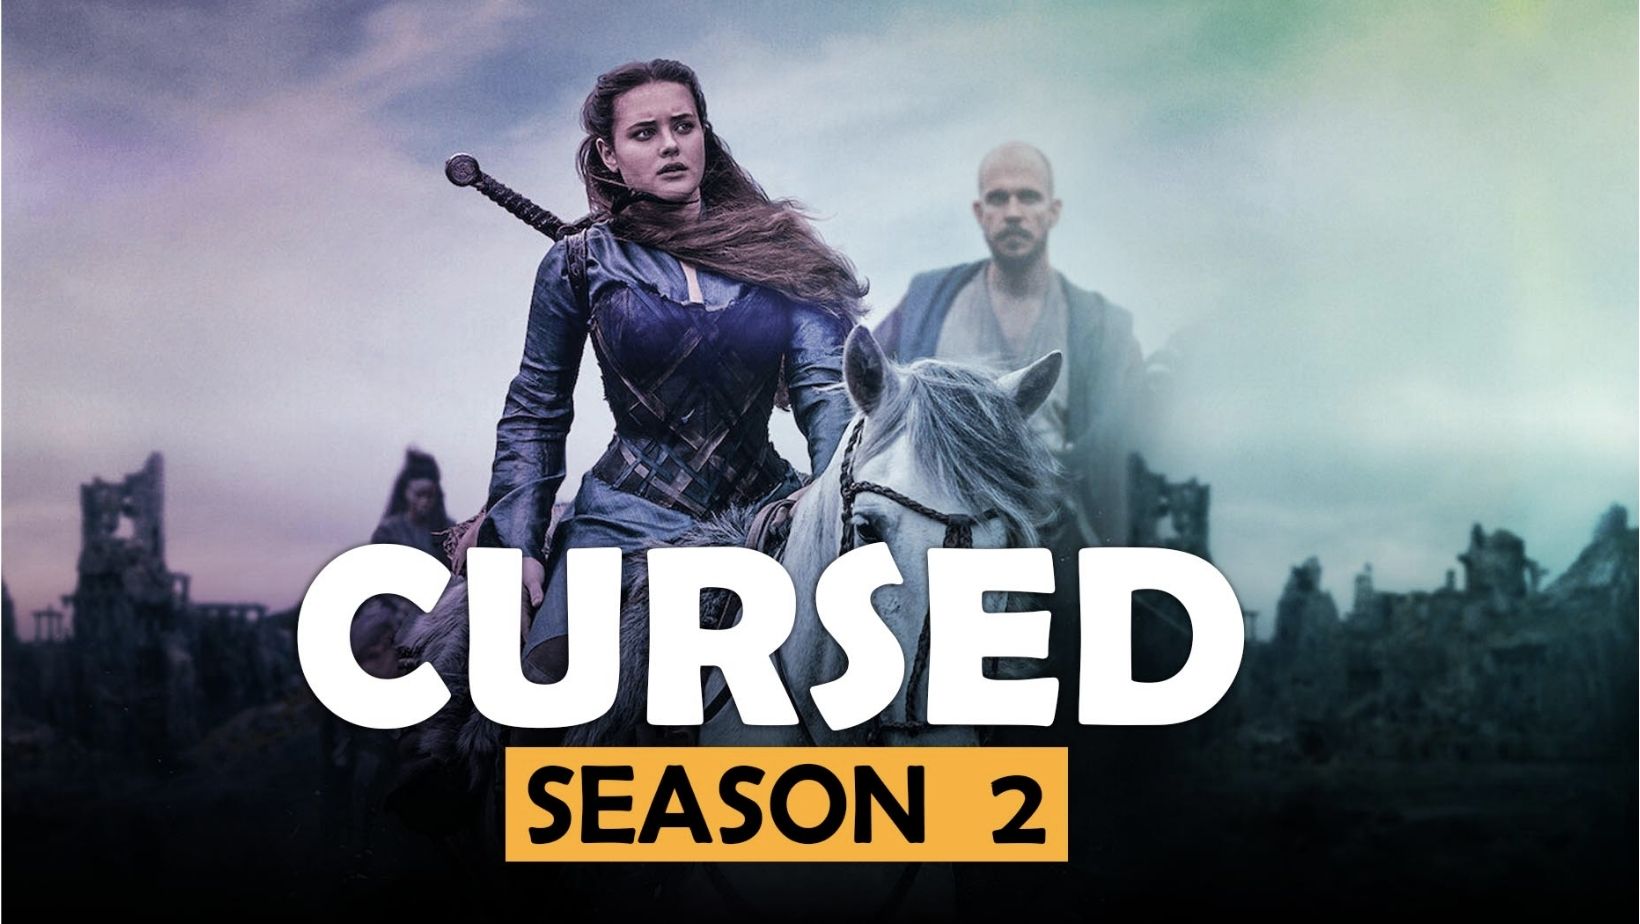 Cursed season 2